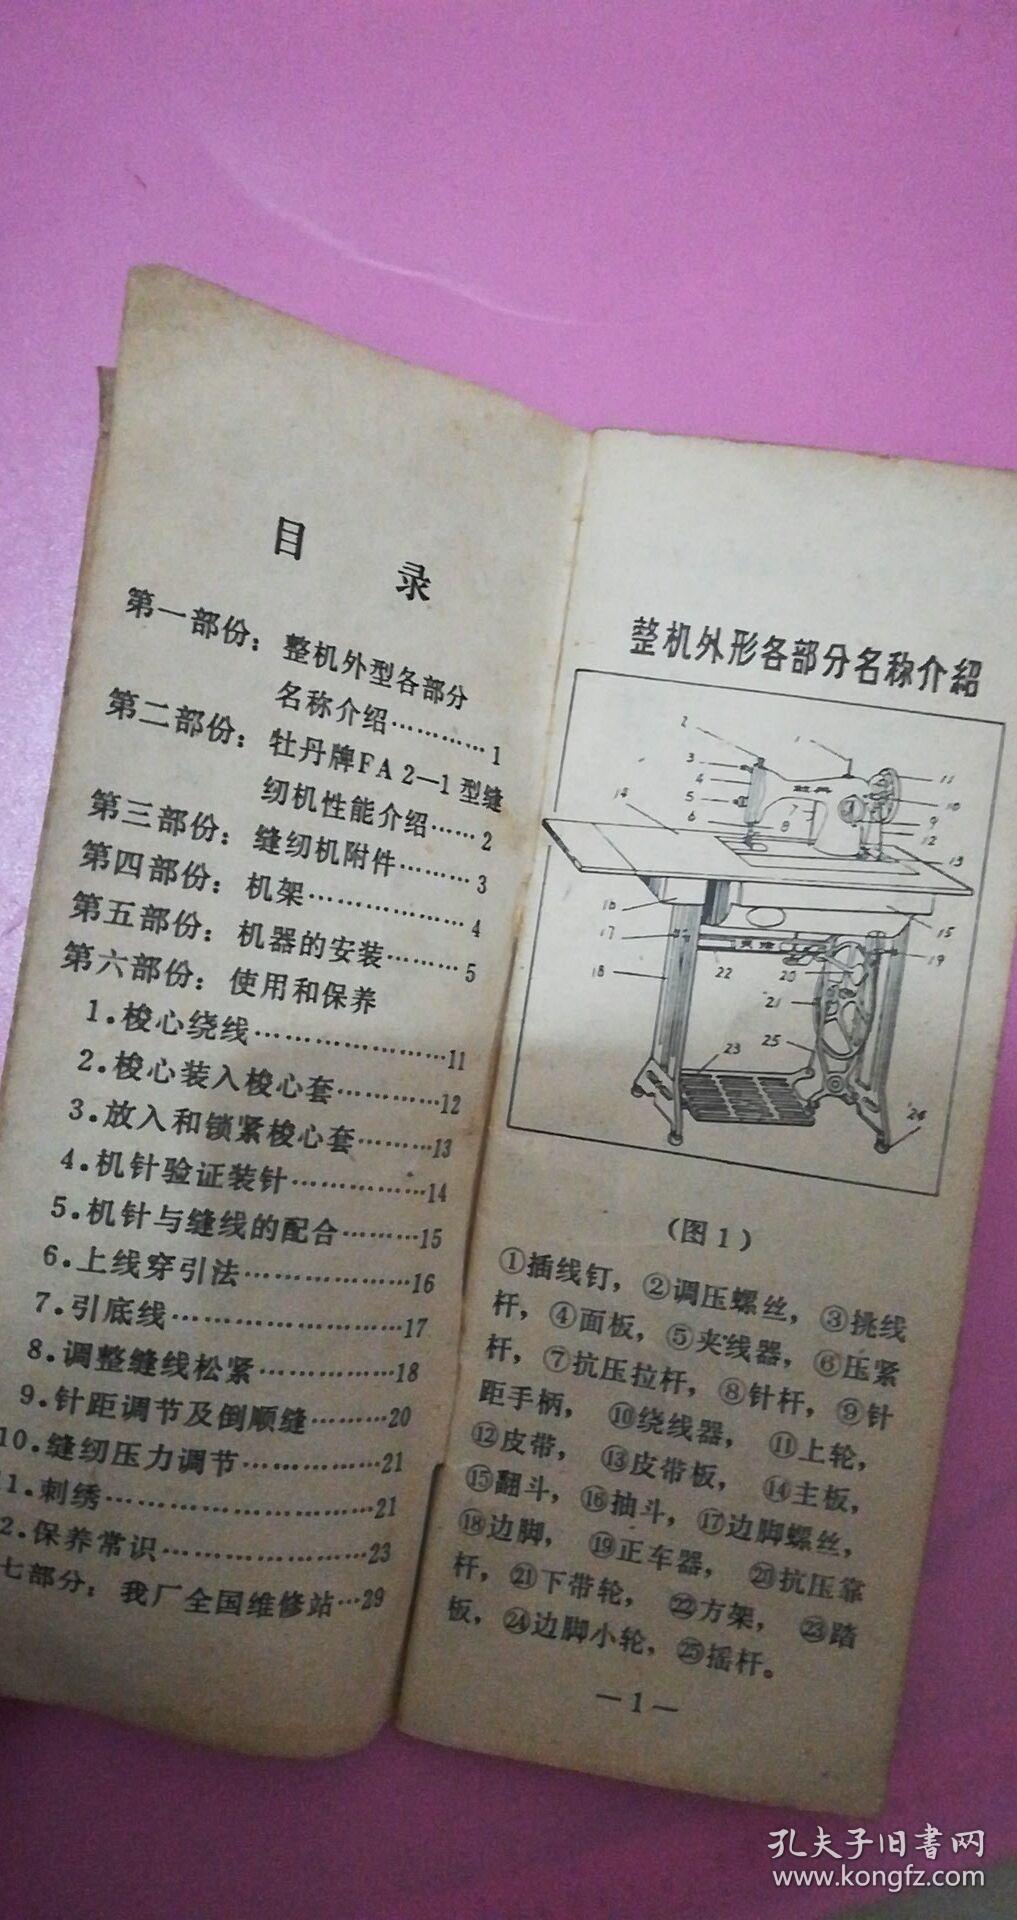 老式缝纫机说明书图片